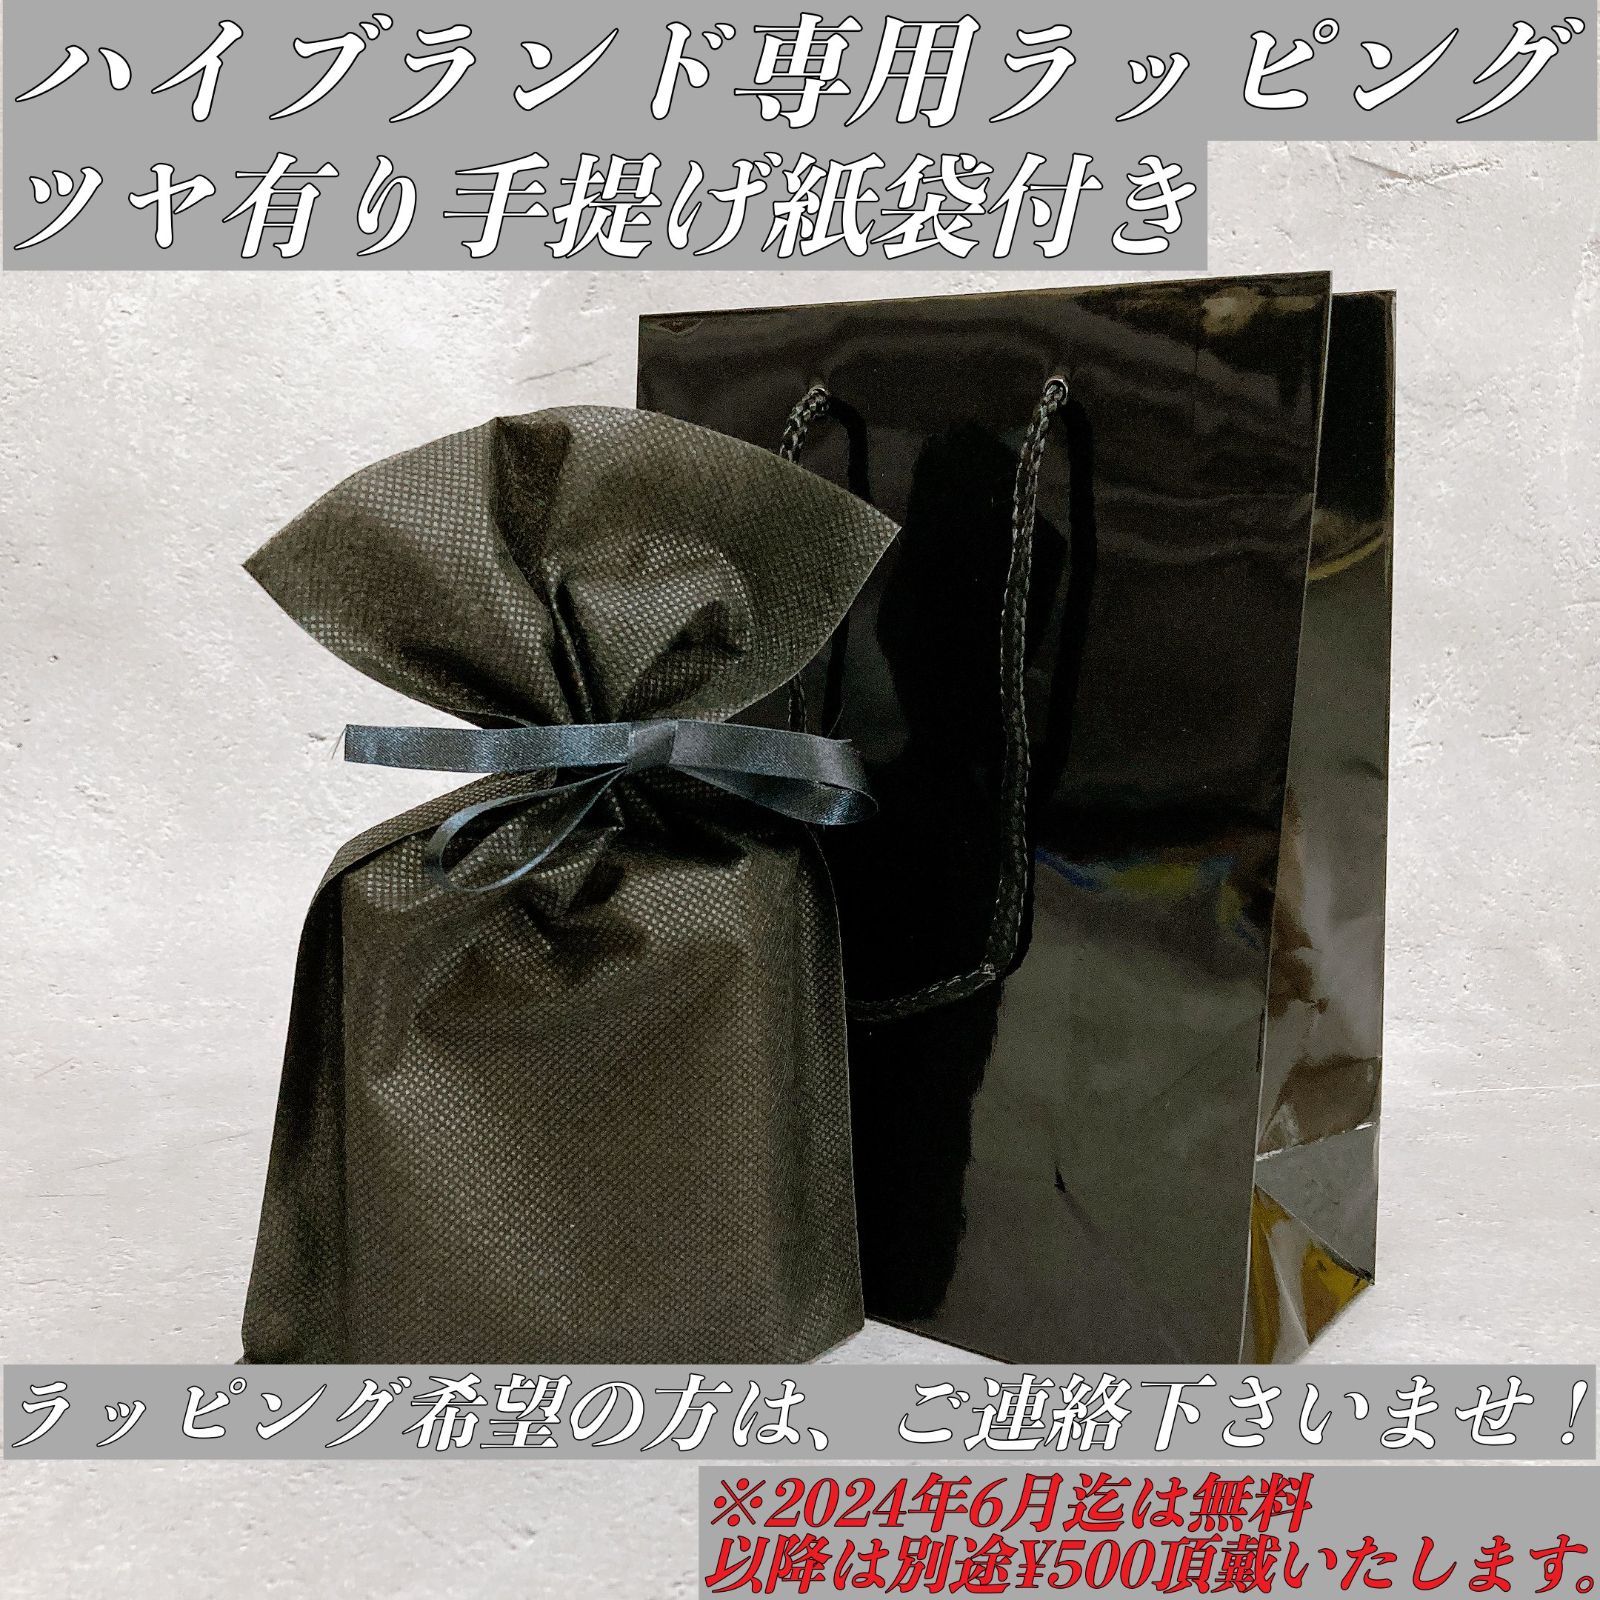 定価¥152,900 JIL SANDER ヌタウナギの革 長財布 イタリア製